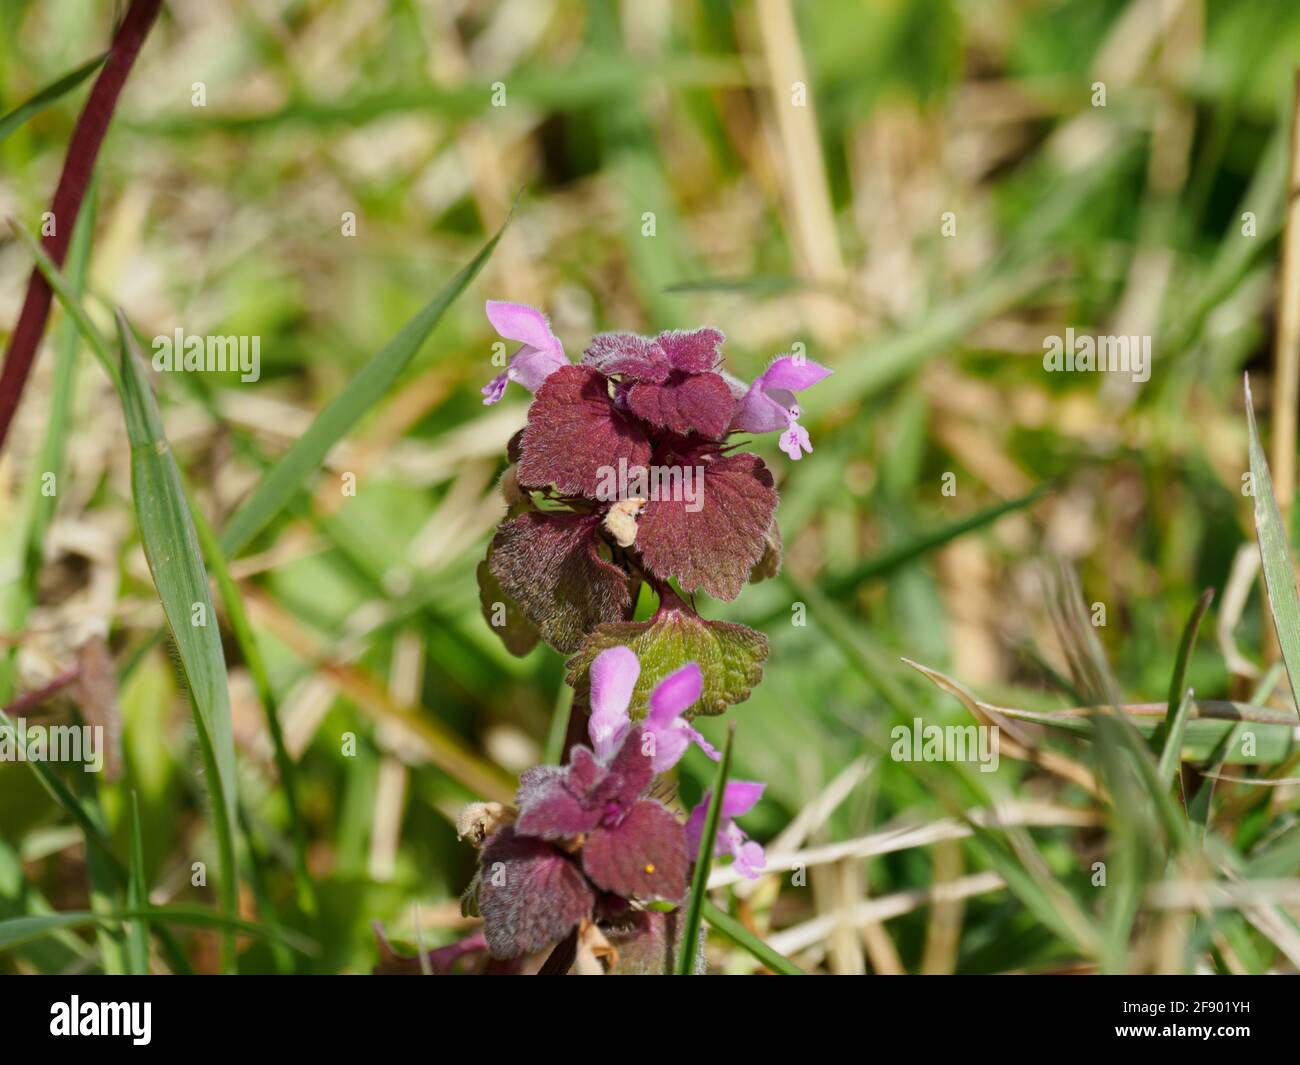 Lamium purpureum, known as red dead-nettle, purple dead-nettle, or purple archangel. Stock Photo